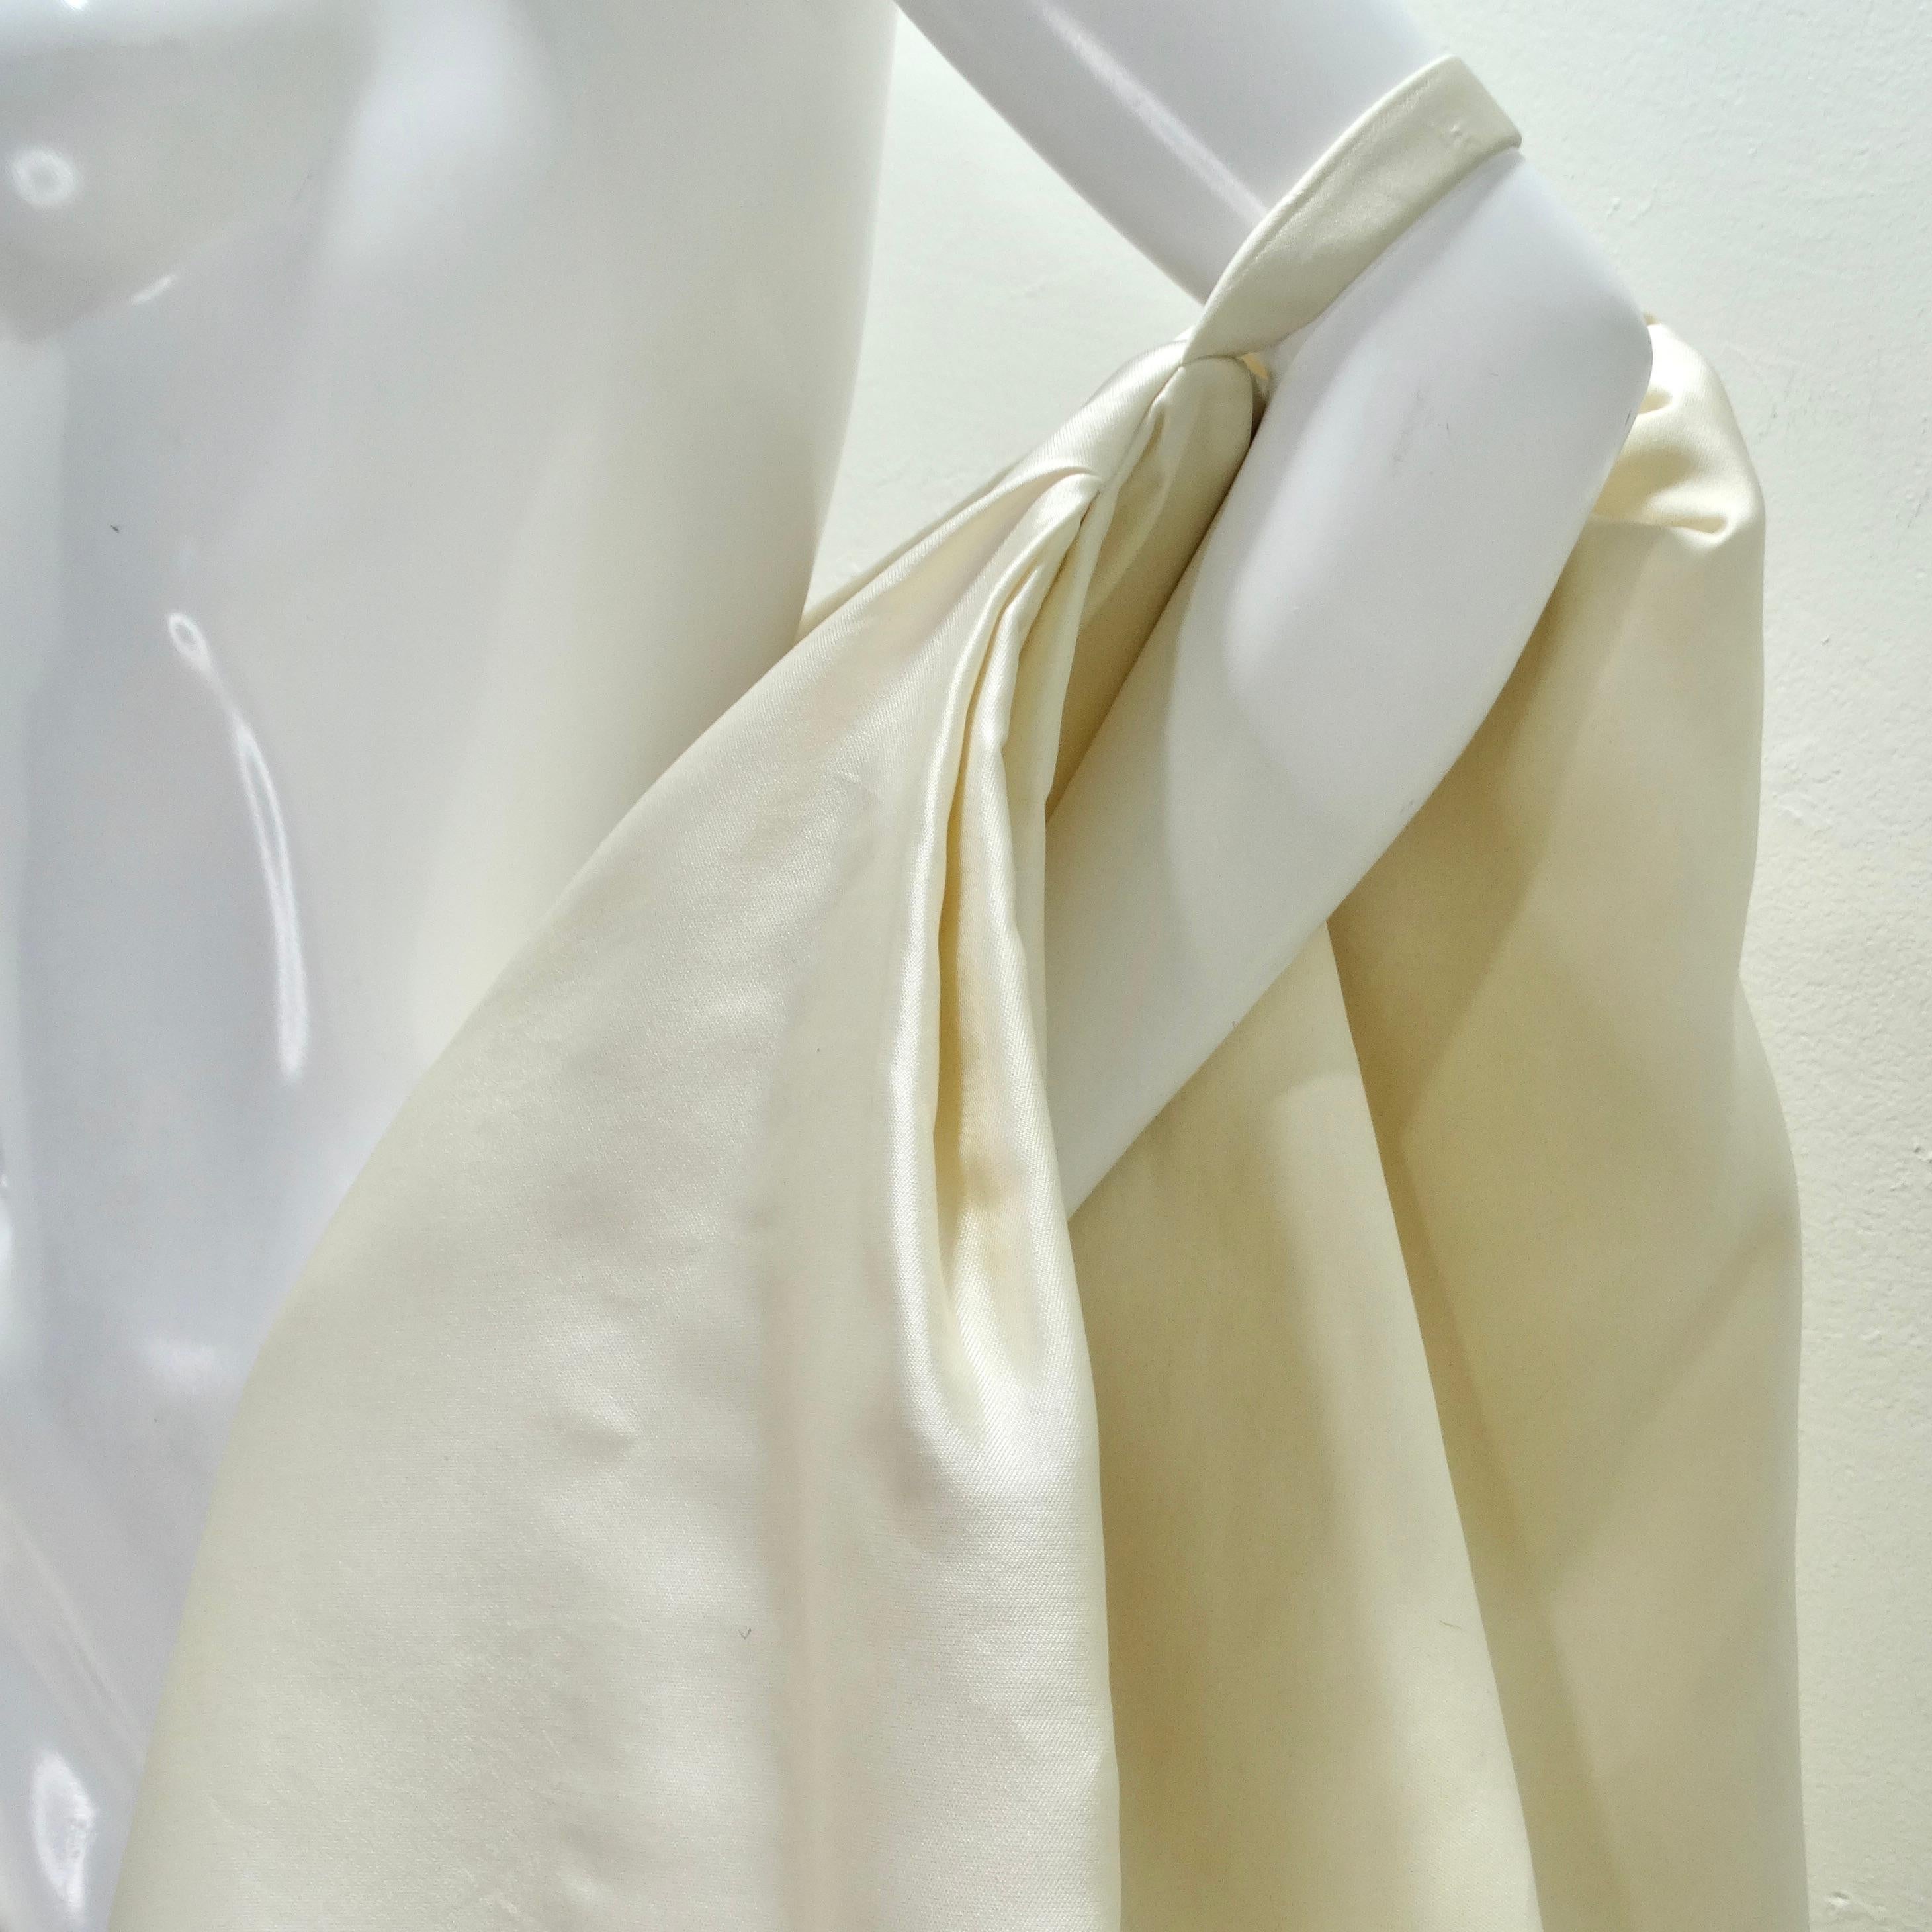 Dévoilez une touche de glamour vintage avec la cape en soie Donna Karan des années 1980 - une pièce de style unique et élégante qui capture l'essence de la sophistication intemporelle. Confectionnée dans une luxueuse soie ivoire, cette cape